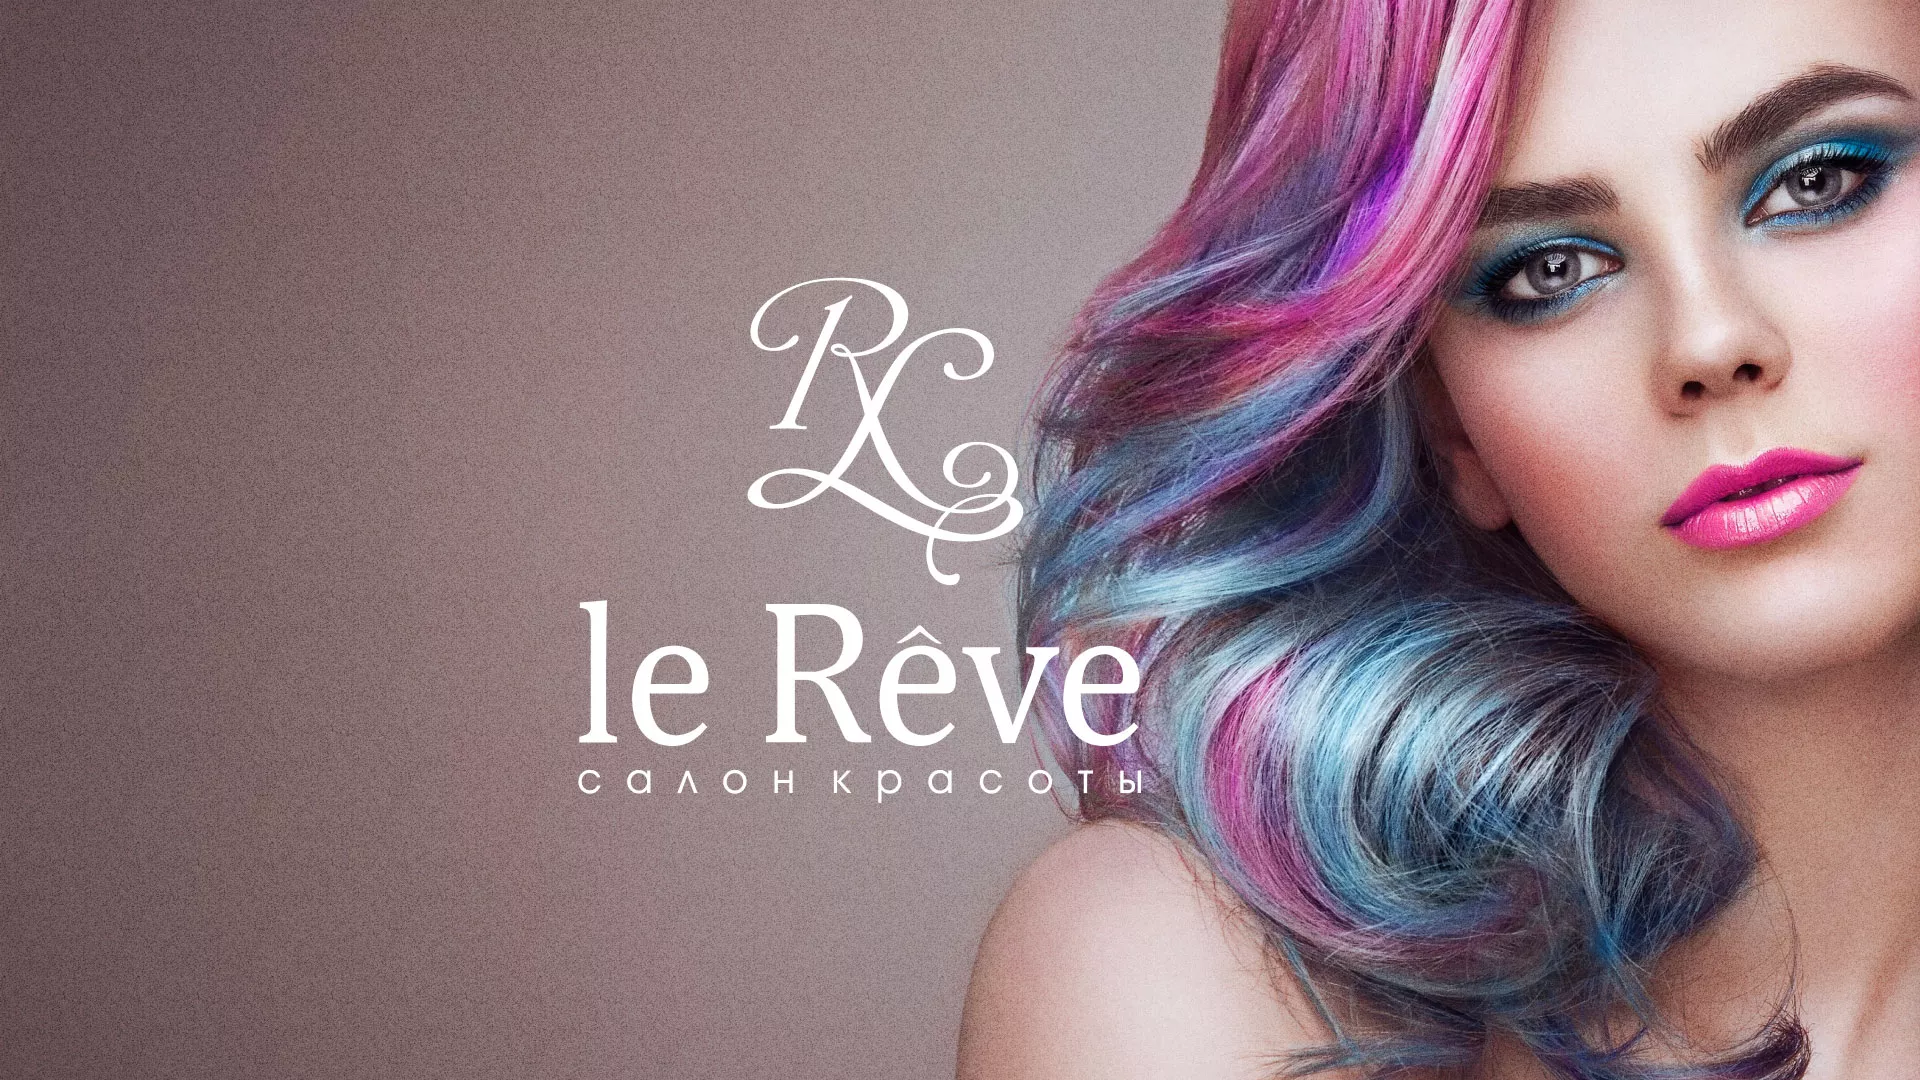 Создание сайта для салона красоты «Le Reve» в Болохово